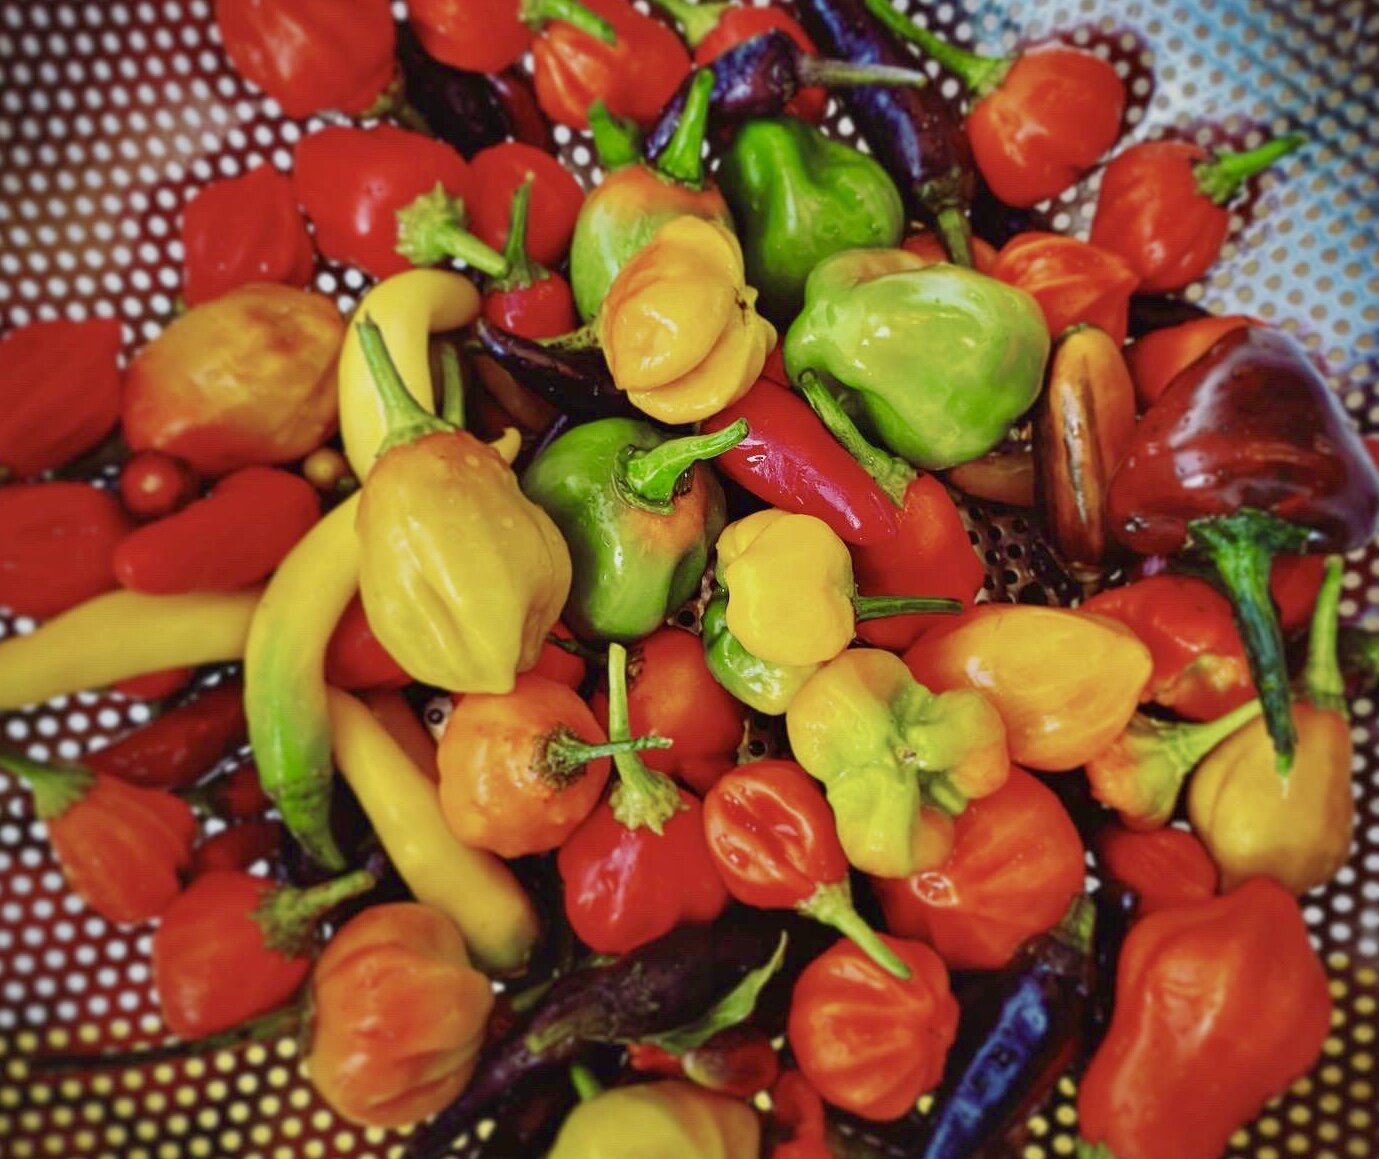 variety of peppers.jpg